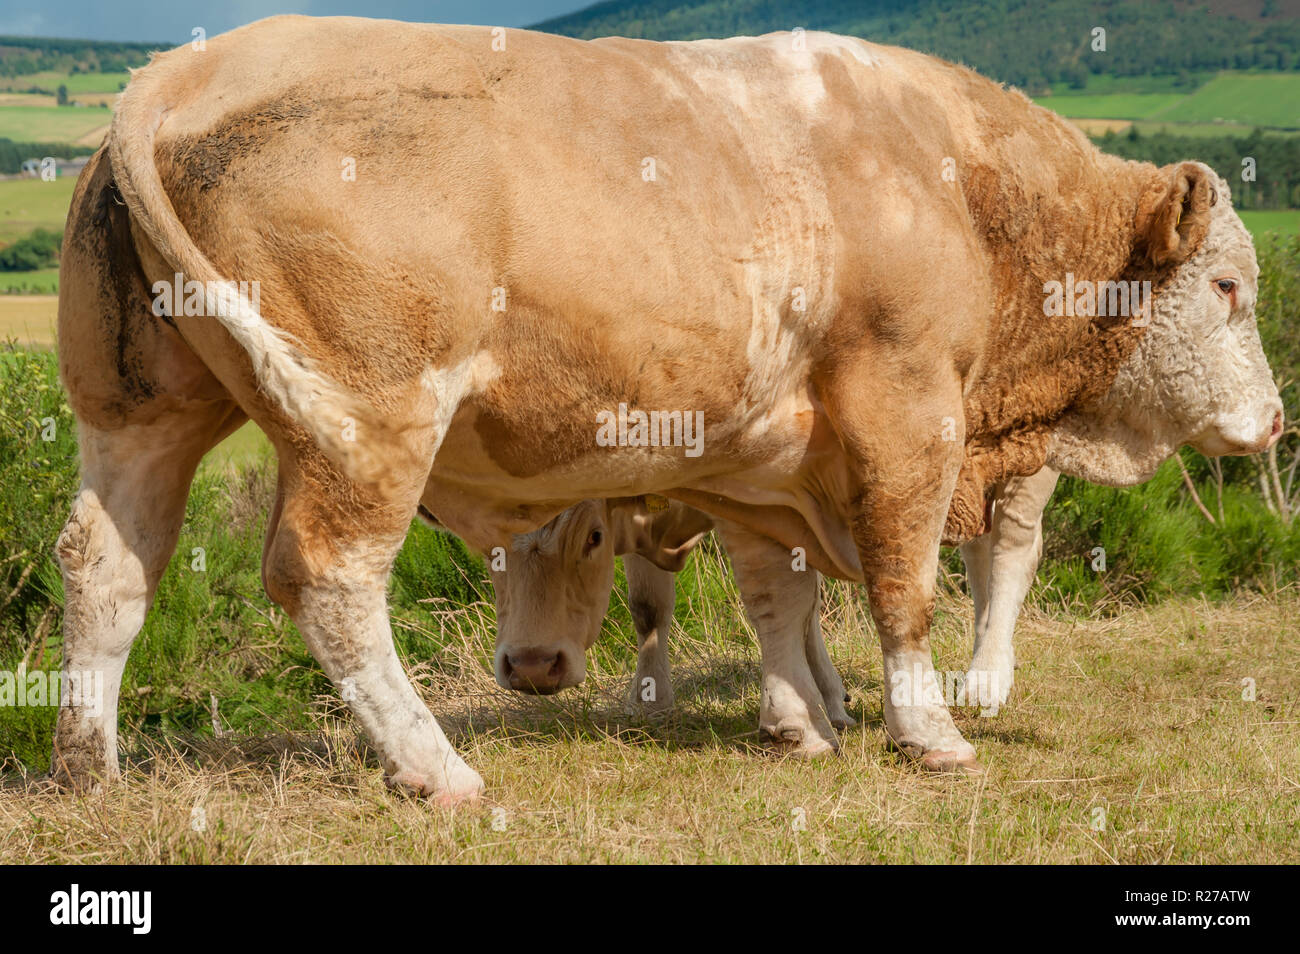 Enorme Simmental bull il ricovero di piccole giovenca vitello che si nasconde dietro di essa e a guardare la fotocamera da sotto di un alpeggio in Scozia Foto Stock